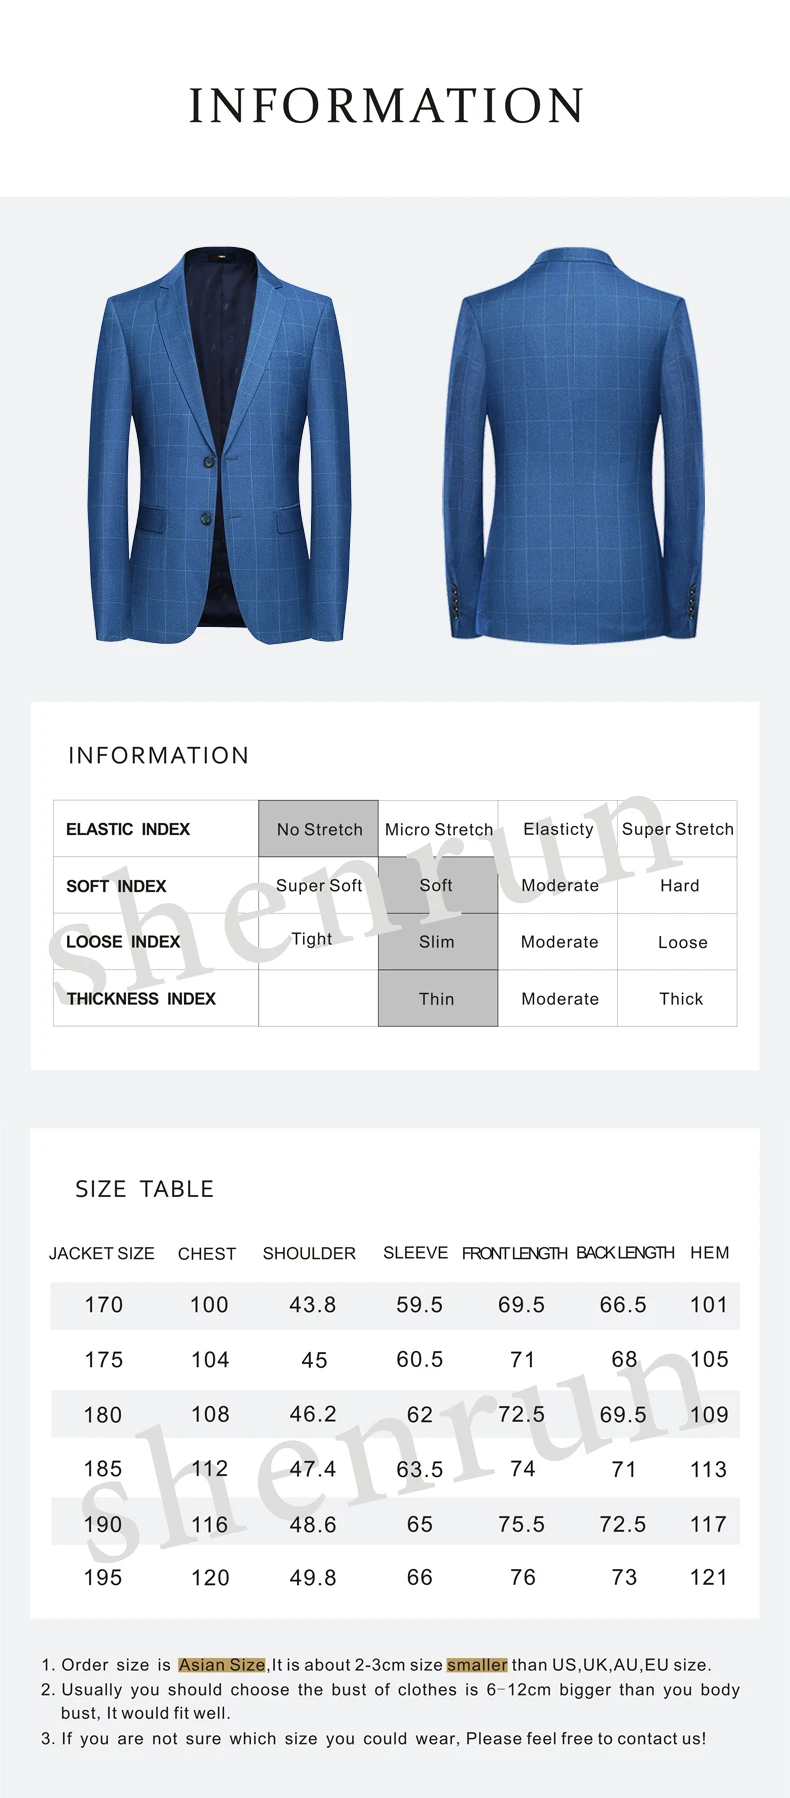 SHENRUN Весна высококачественный умный модный клетчатый синий повседневный костюм пиджак для мужчин, мужской блейзер Hombre повседневная куртка плюс-размер M-4XL